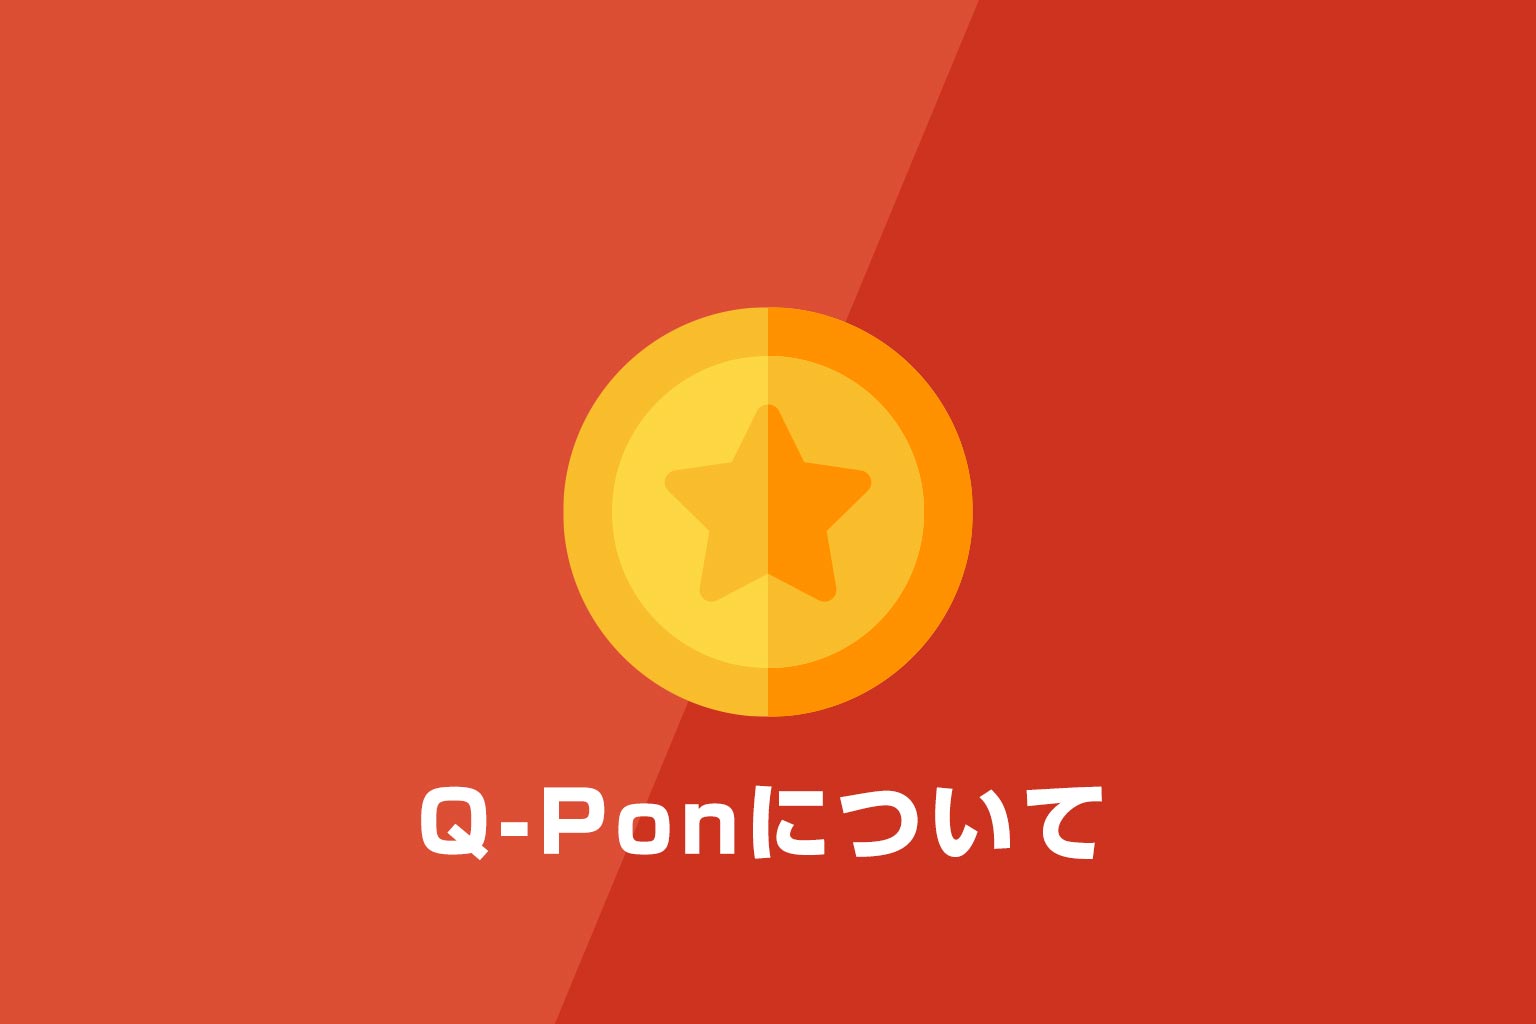 Q-Ponについて